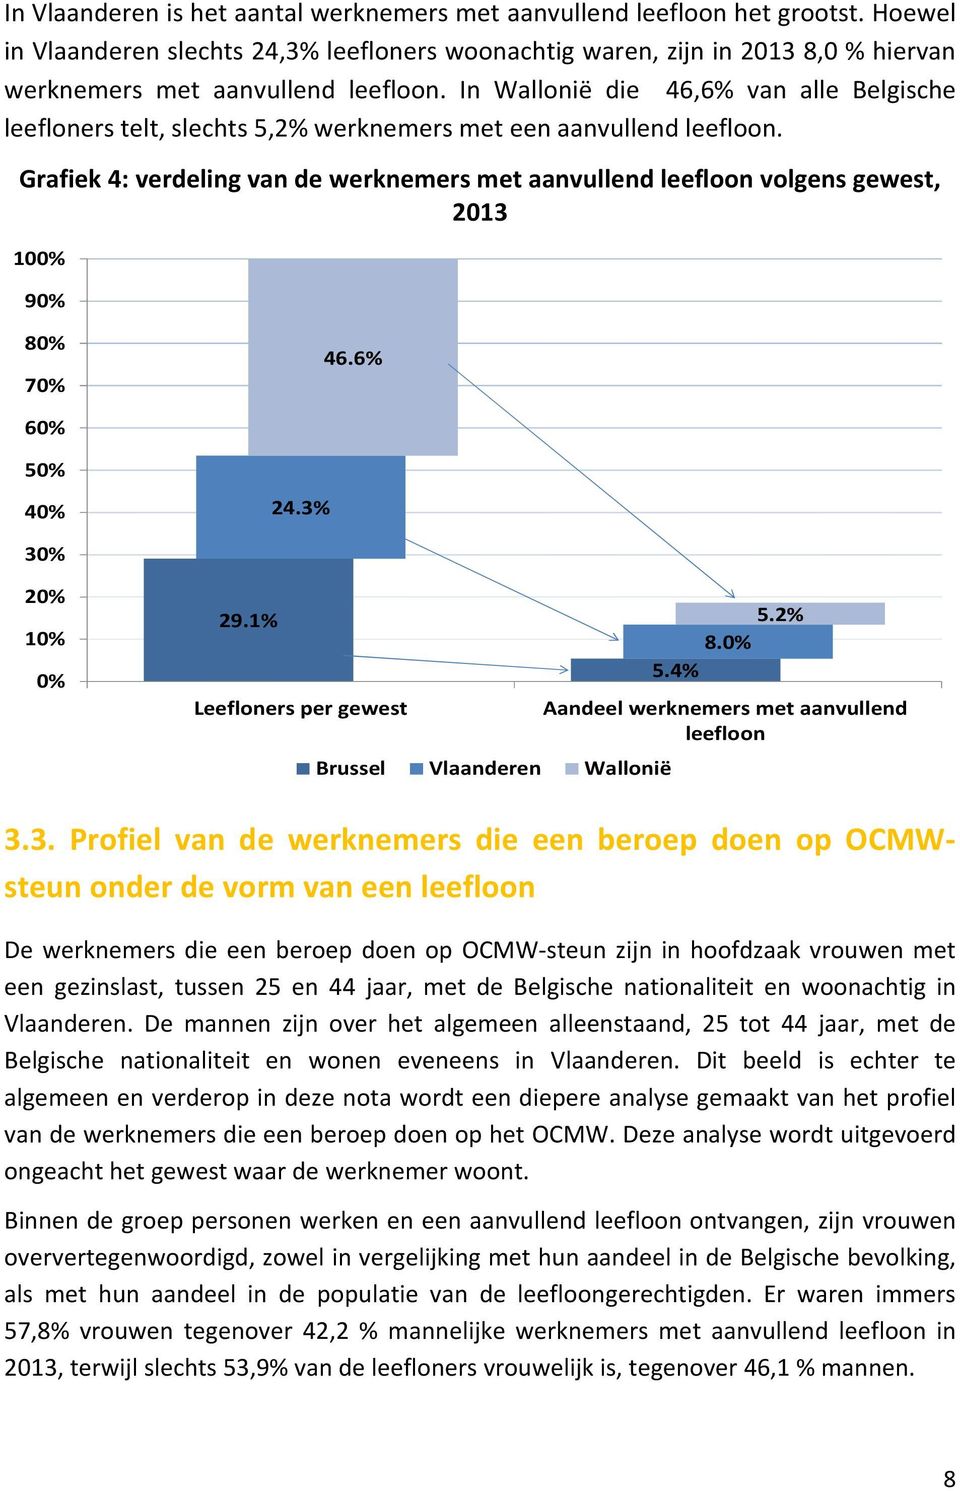 In Wallonië die 46,6% van alle Belgische leefloners telt, slechts 5,2% werknemers met een aanvullend leefloon.